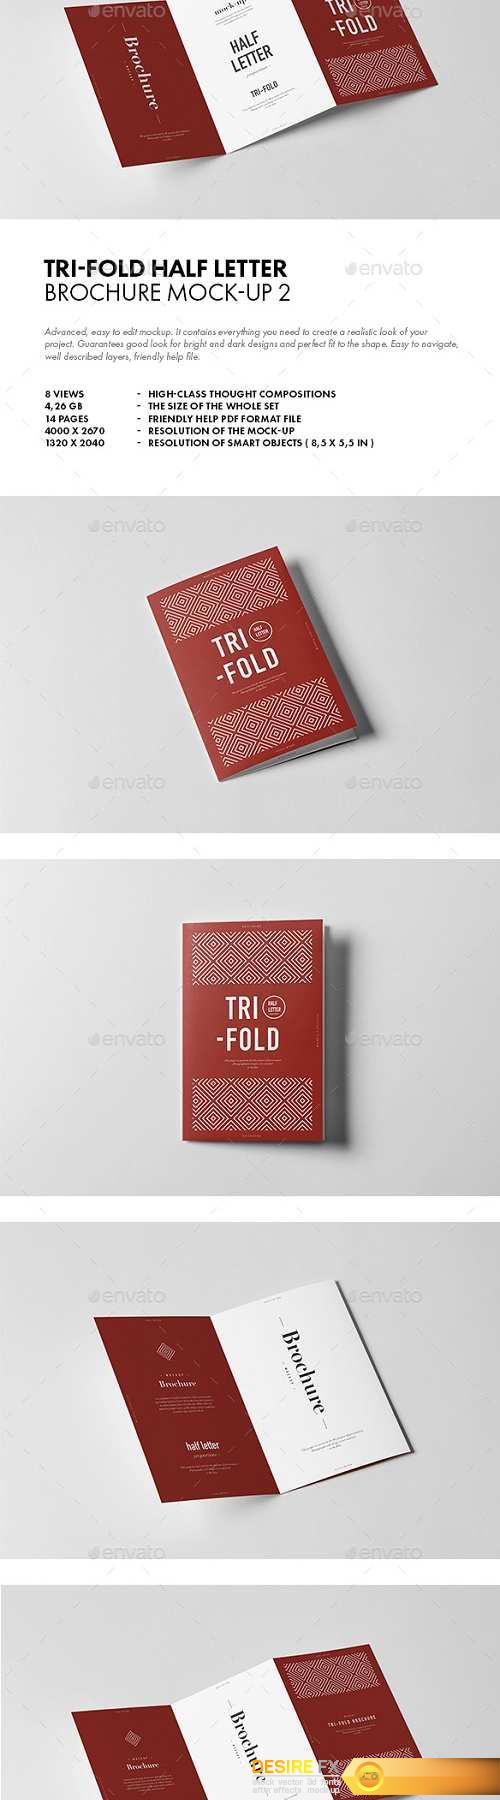 Tri-Fold Half Letter Brochure Mock-up 2 20197704